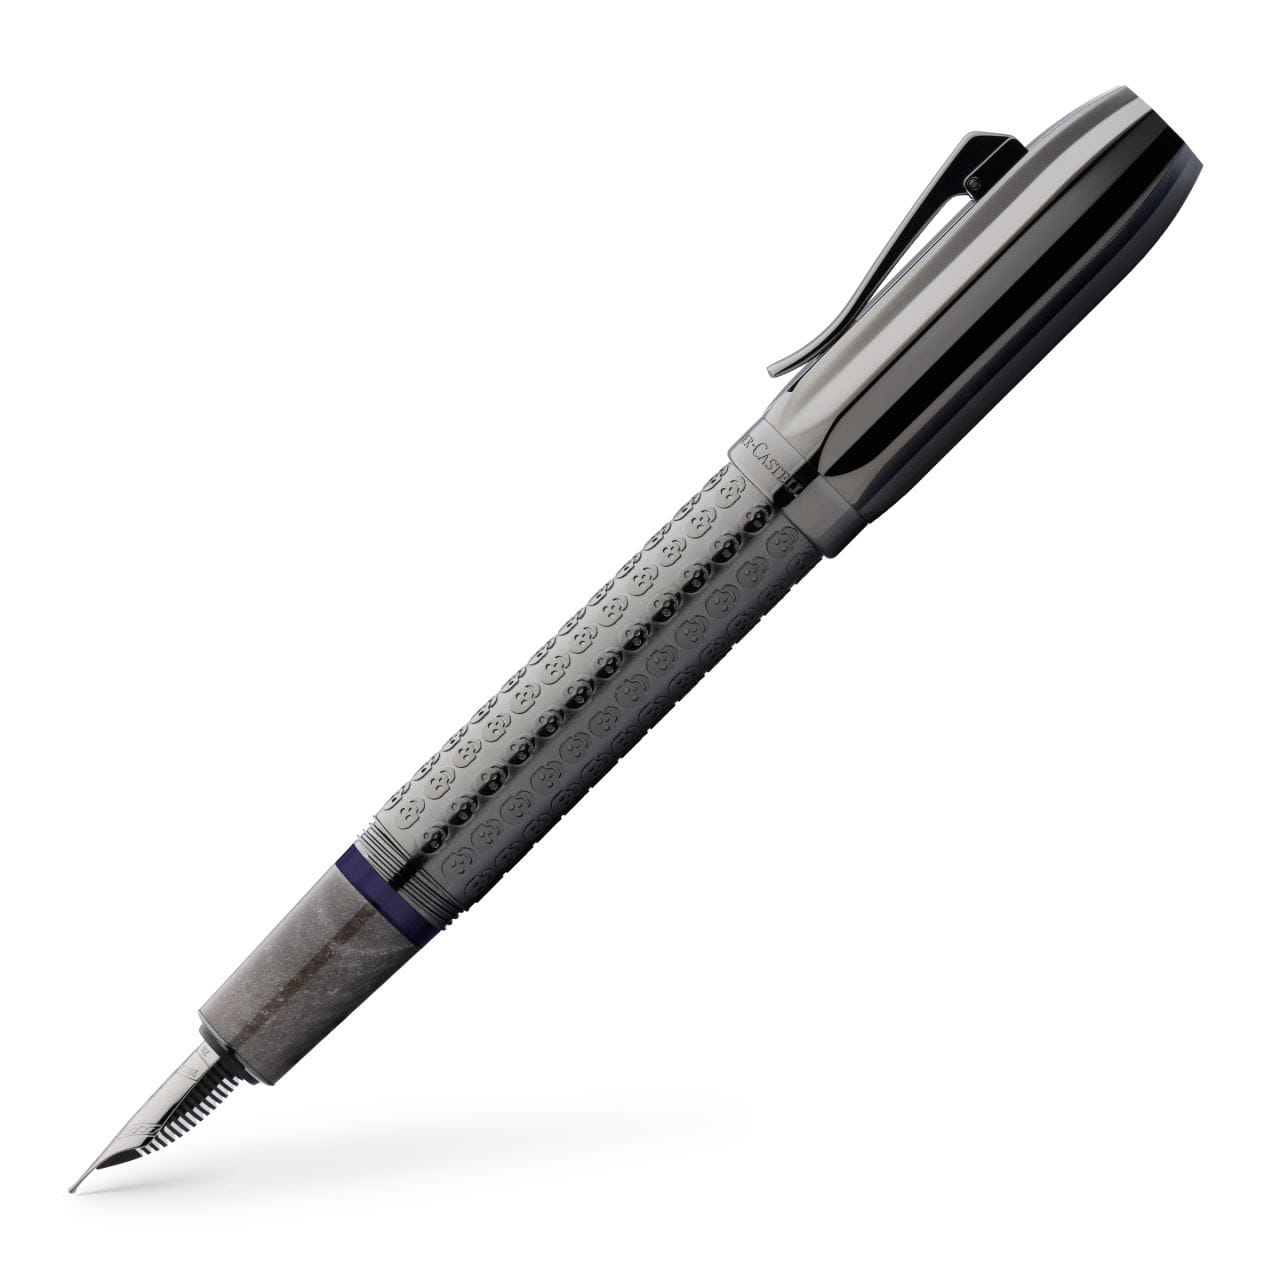 Graf-von-Faber-Castell - Penna stilografica Pen of the Year 2022 BB